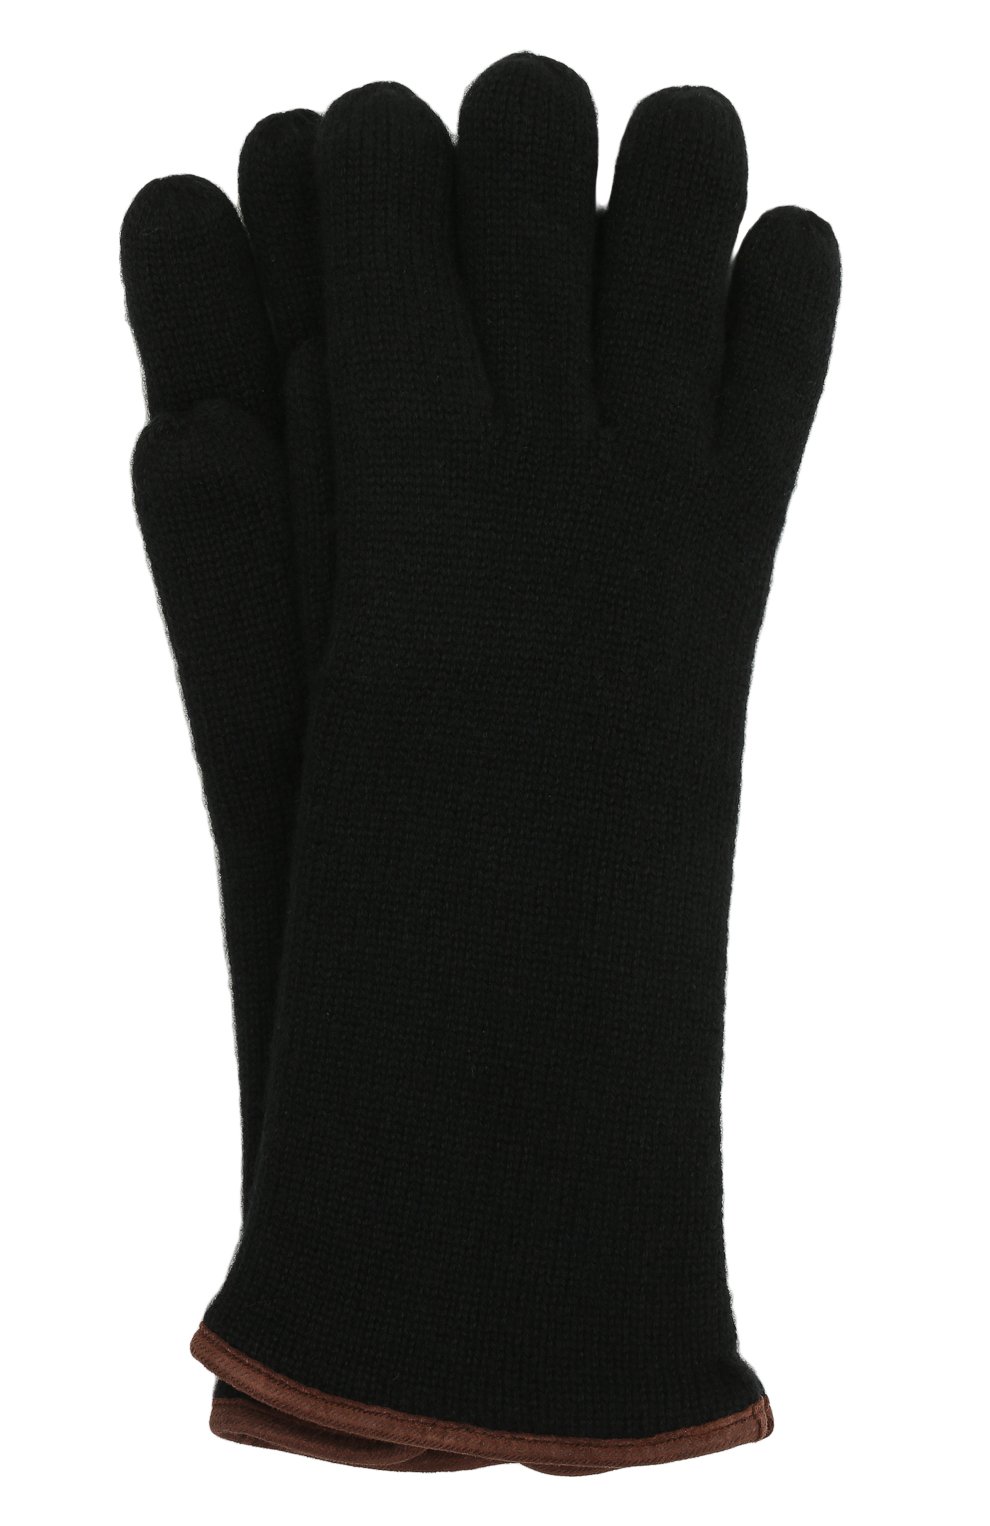 Мужские кашемировые перчатки SVEVO черного цвета, арт. 0158USA21/MP01/2 | Фото 1 (Материал: Текстиль, Кашемир, Шерсть; Кросс-КТ: Трикотаж)